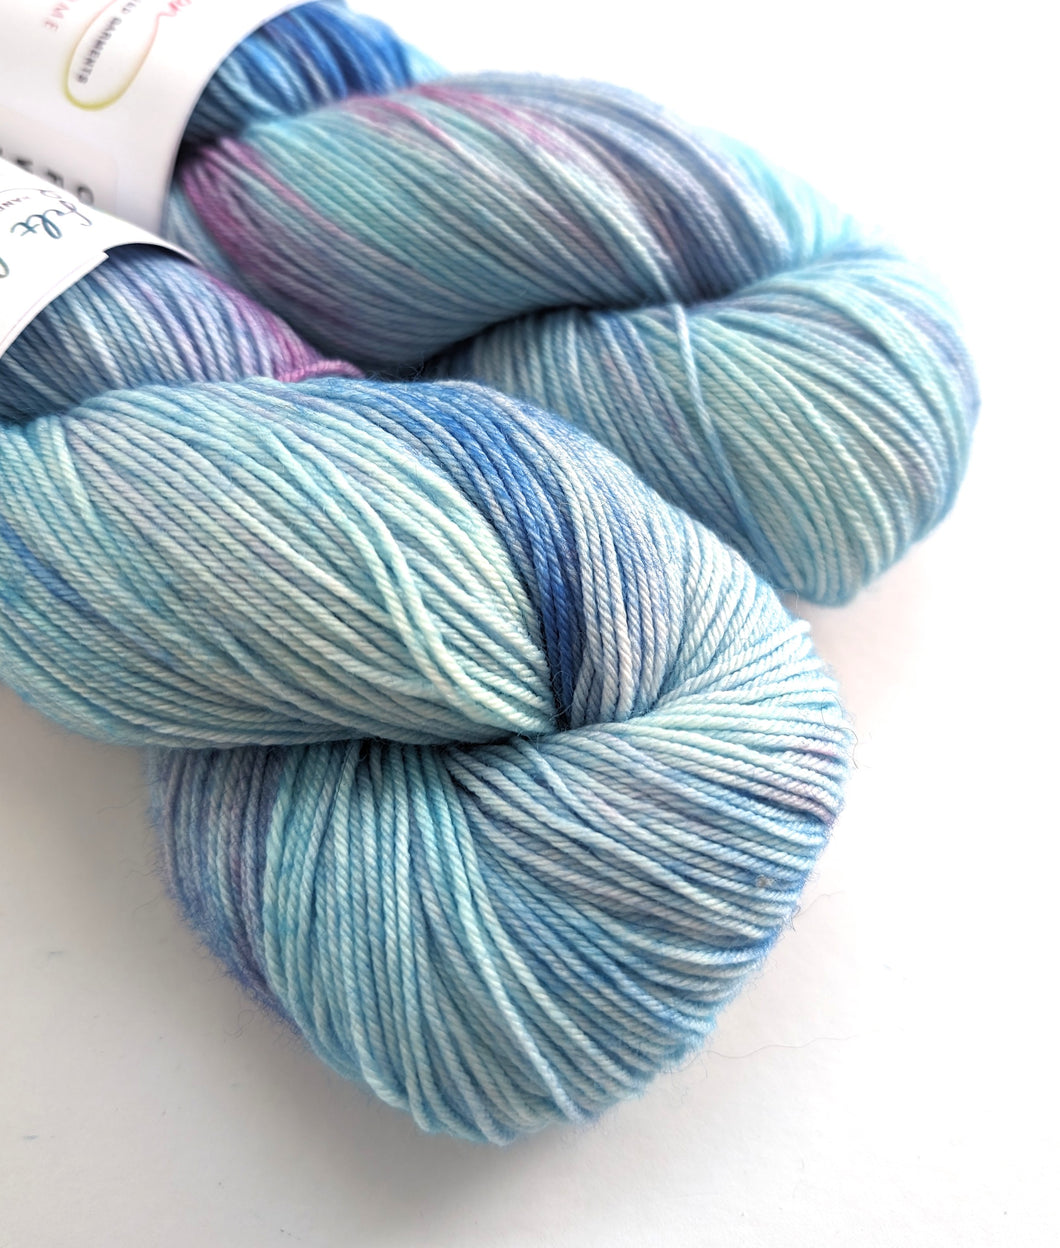 Blues and Pinks, on superwash merino/nylon sock yarn.